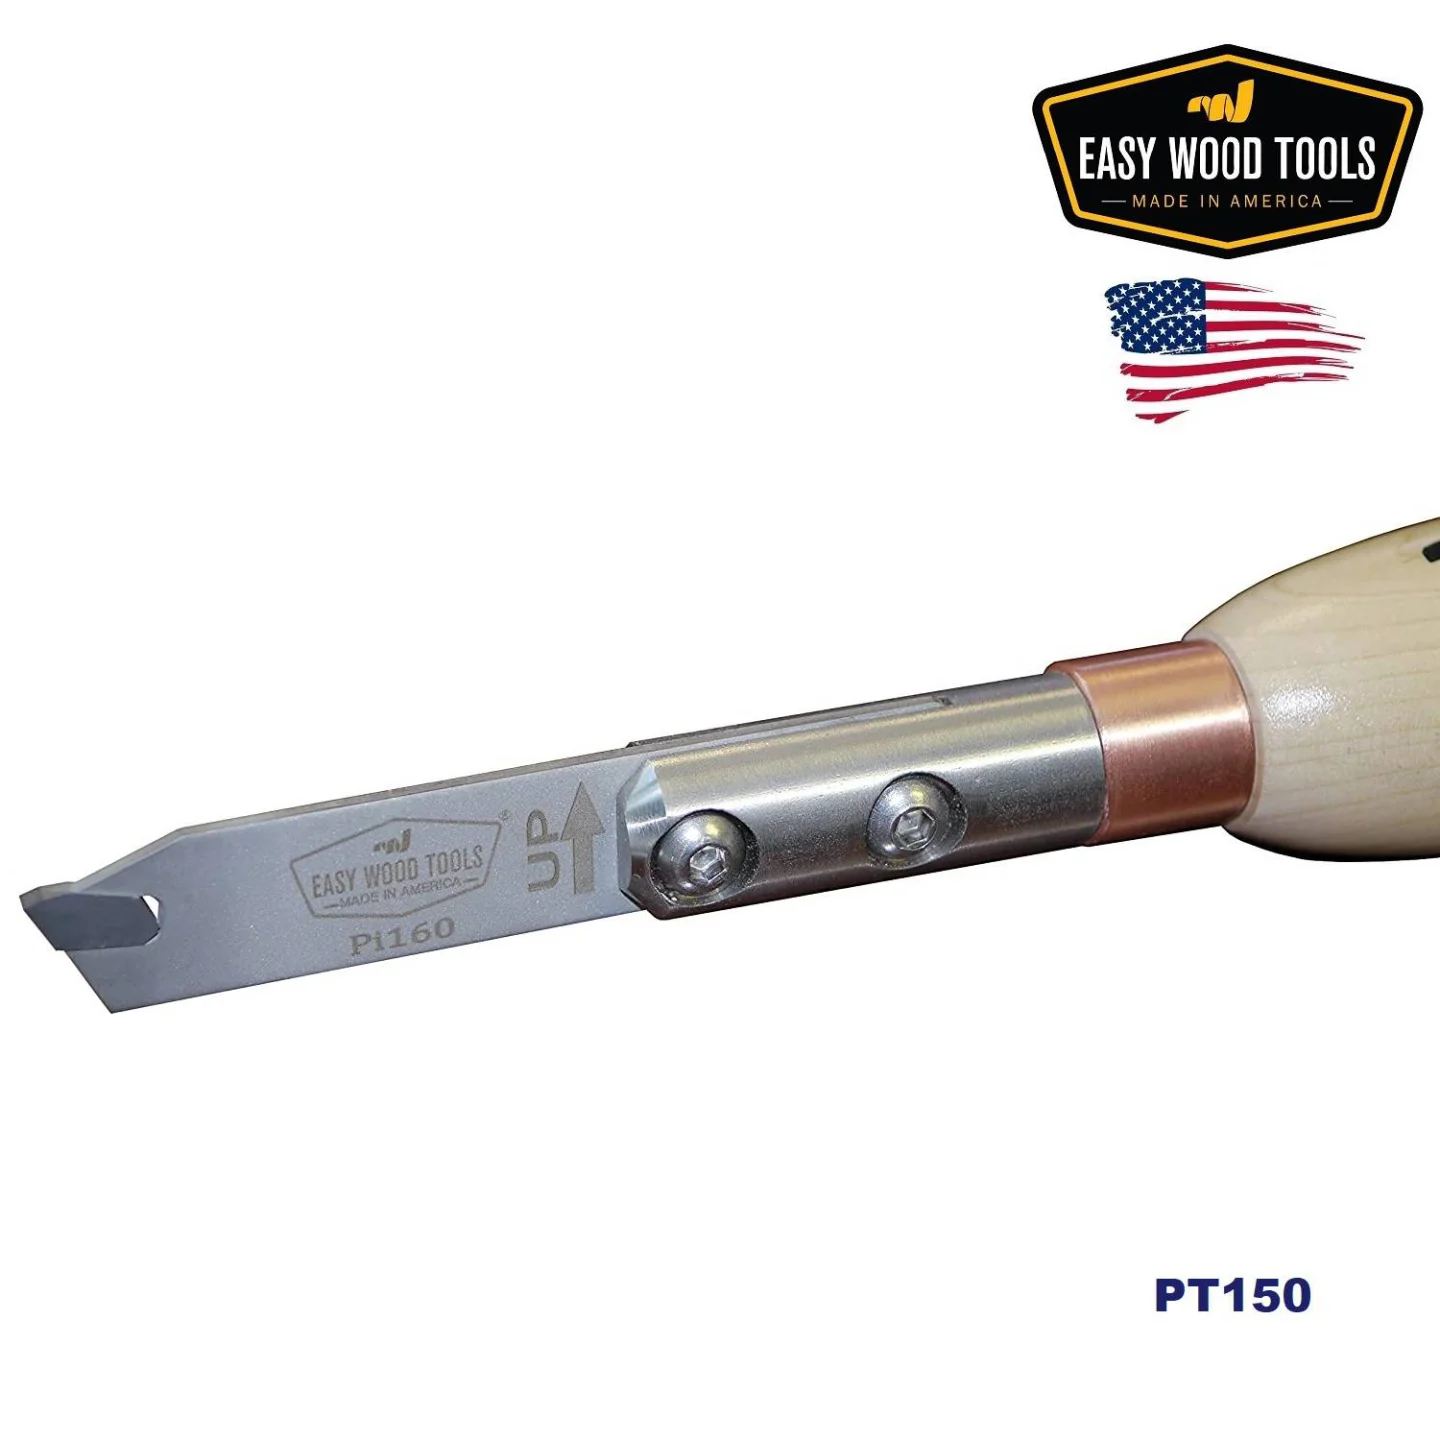 Easy-Wood-Tools-PT150-afsteekbeitel.